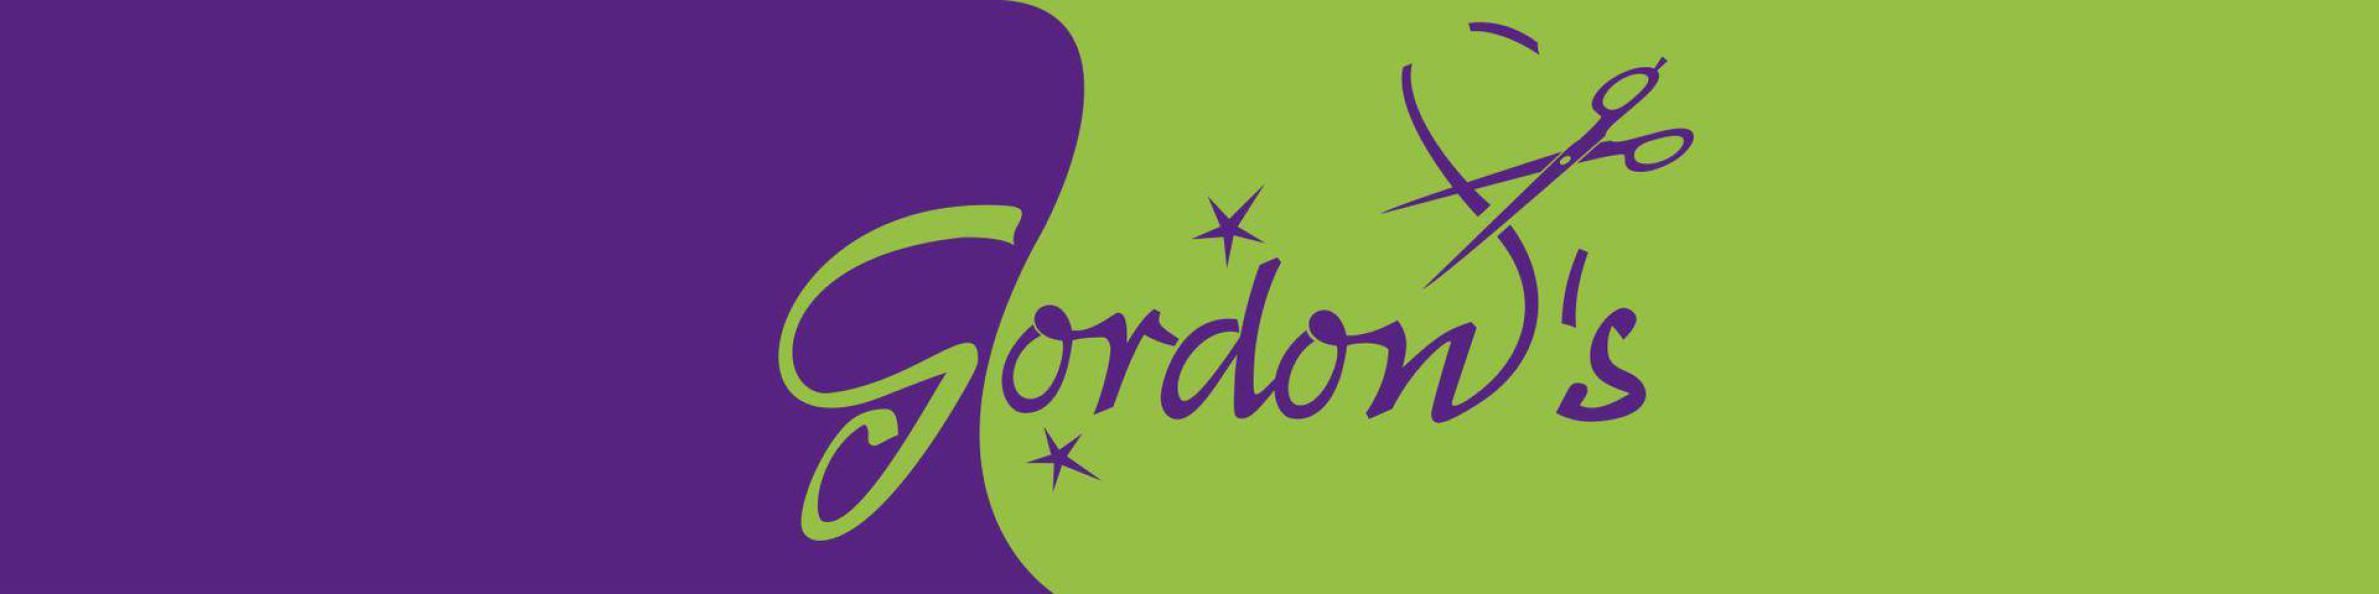 (c) Gordon-s.de